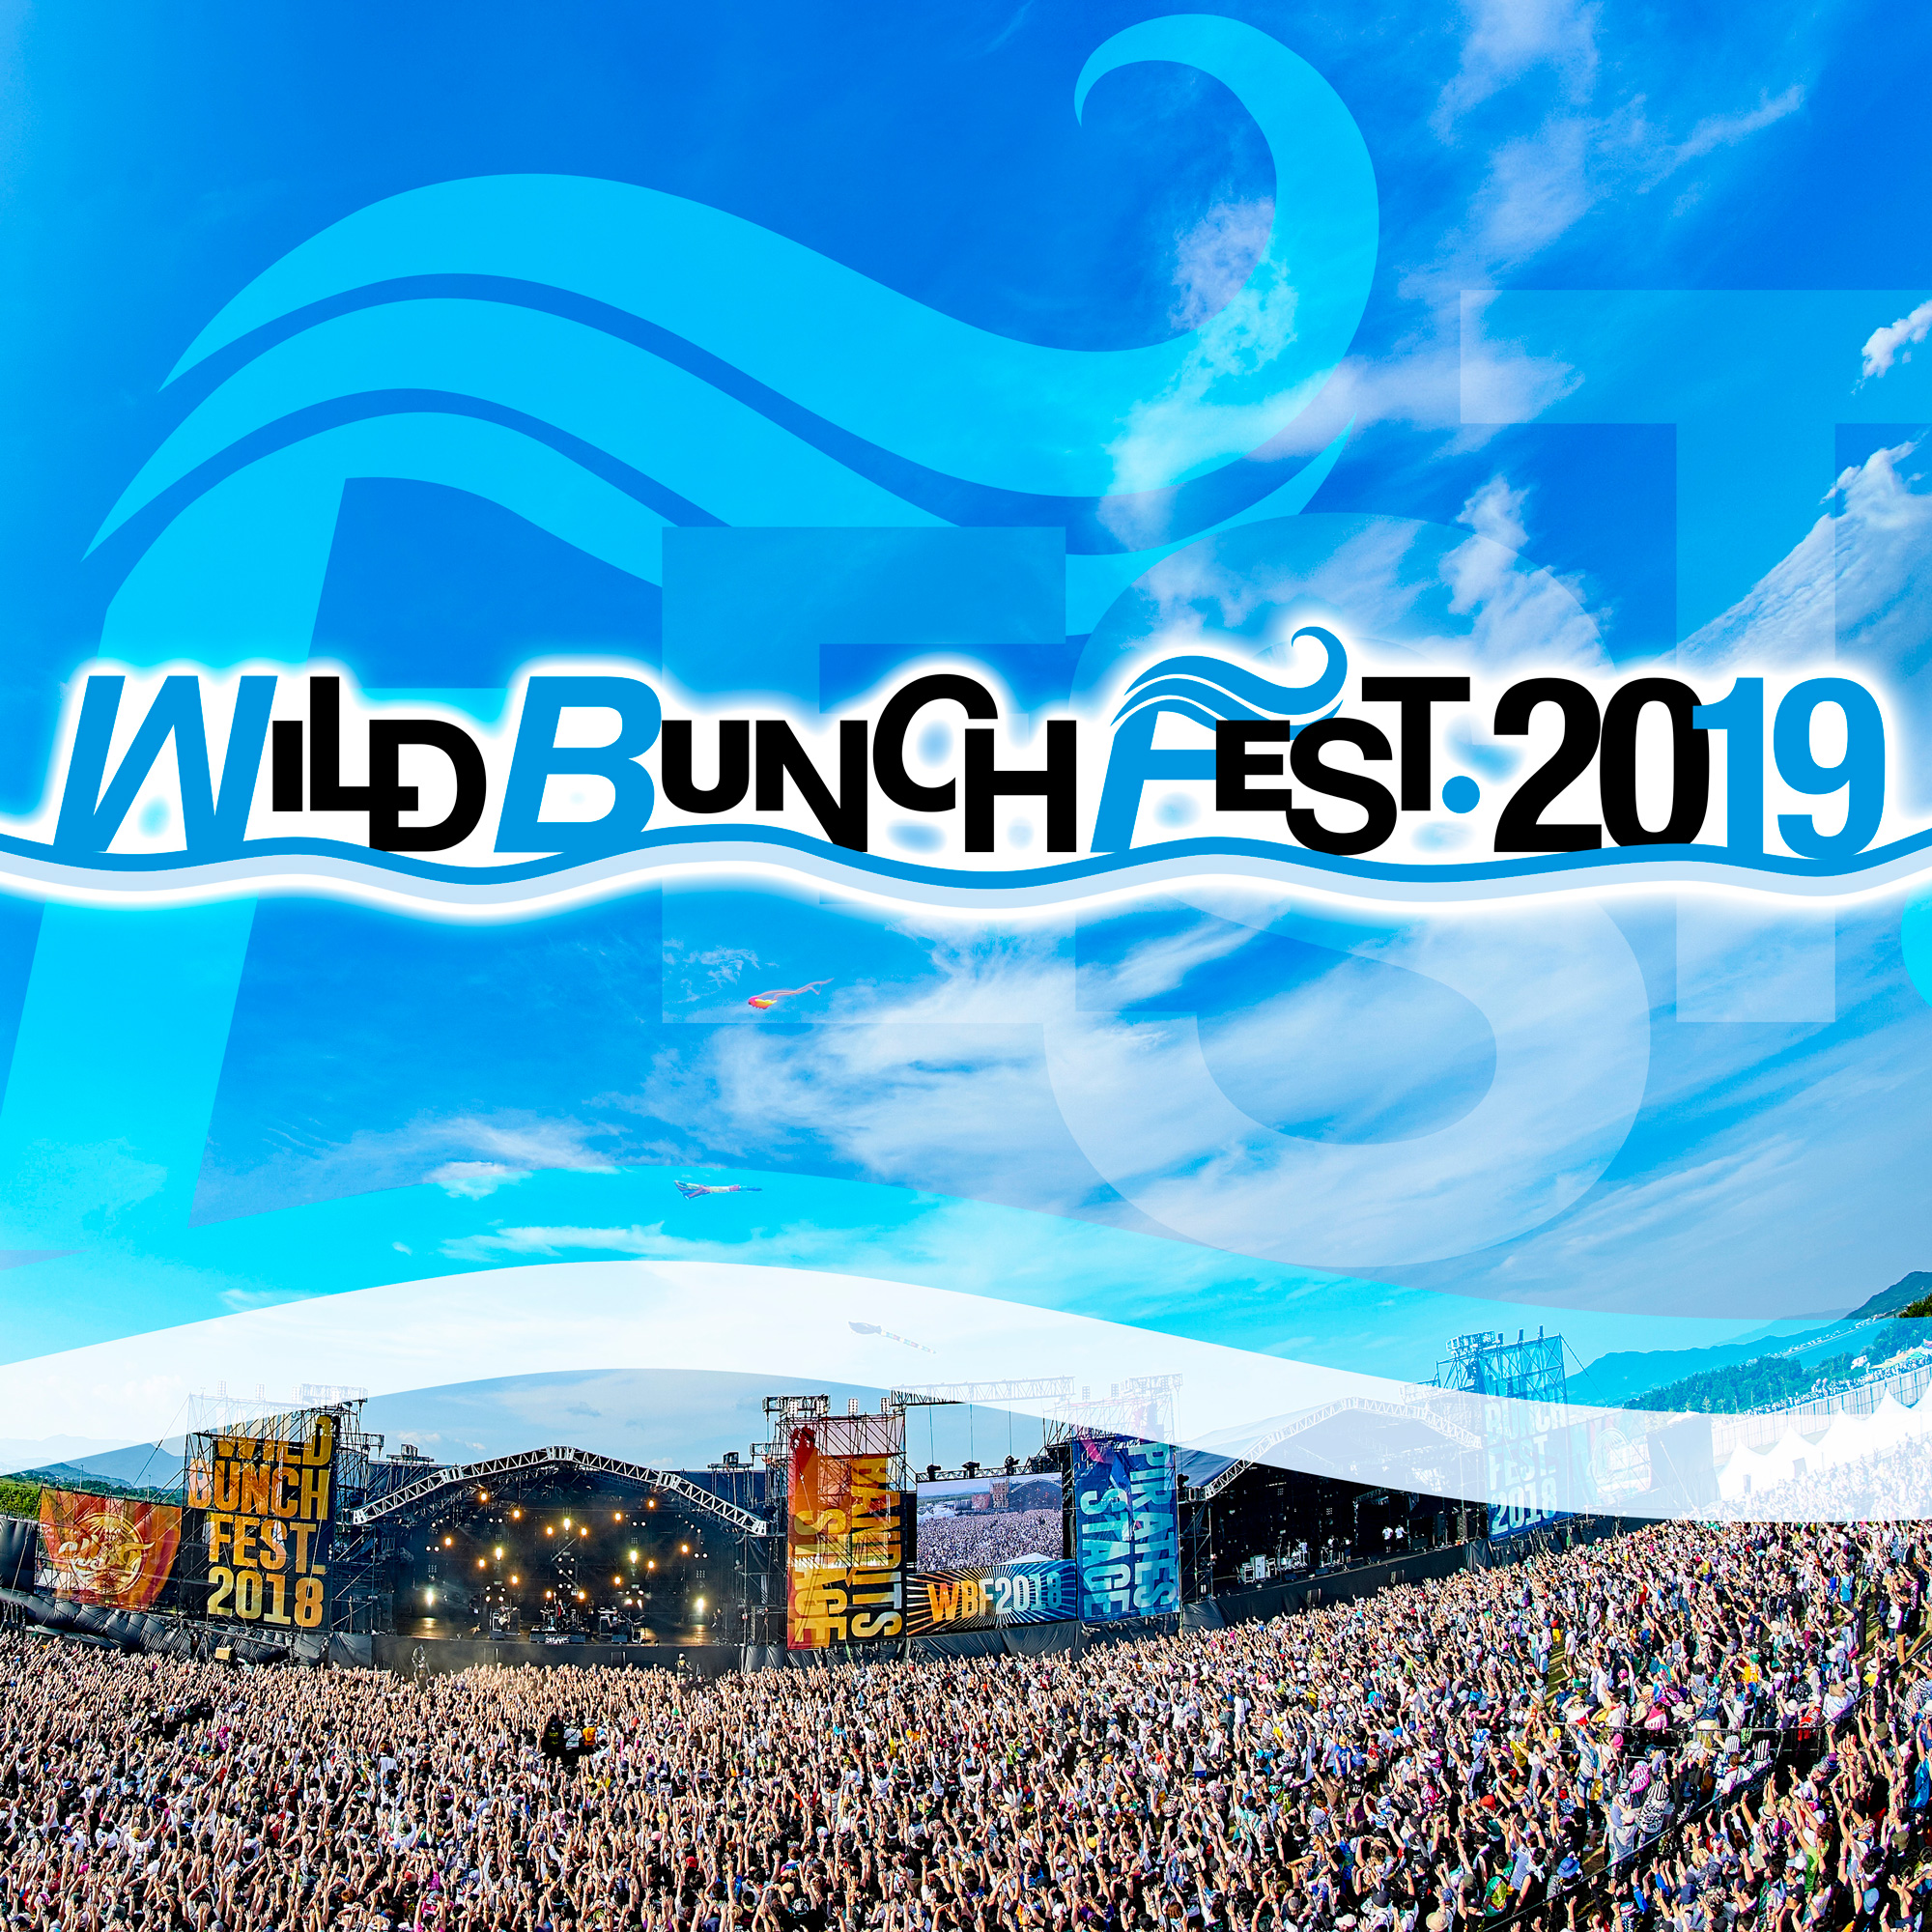 【山口】WILD BUNCH FEST. 2019 (山口きらら博記念公園)